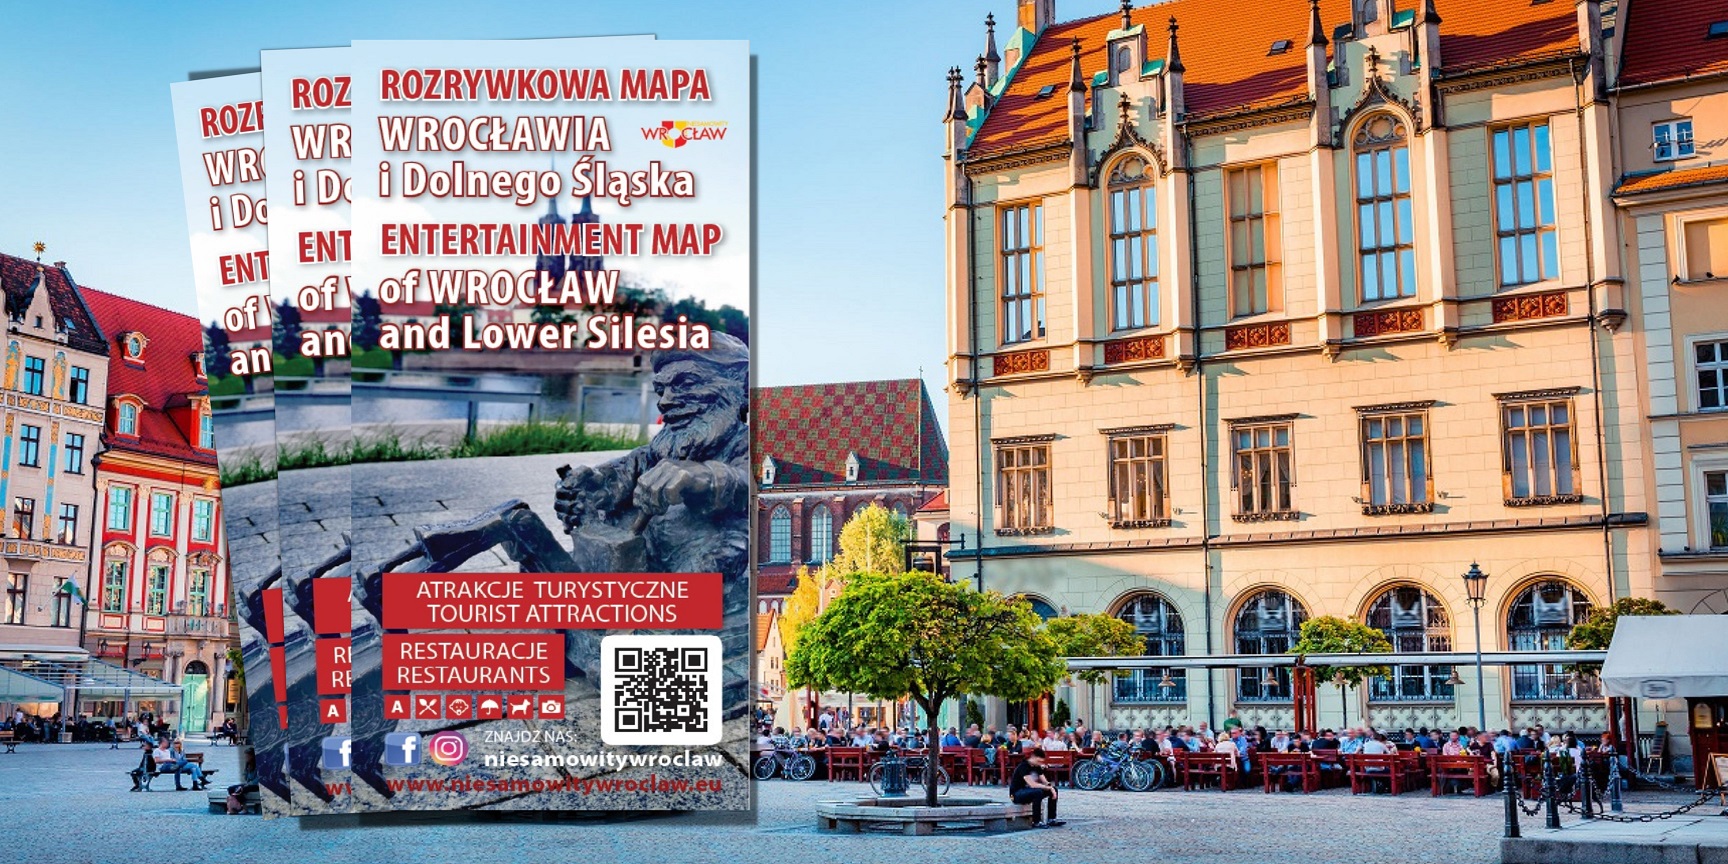 Rozrywkowa Mapa Wrocławia i okolic